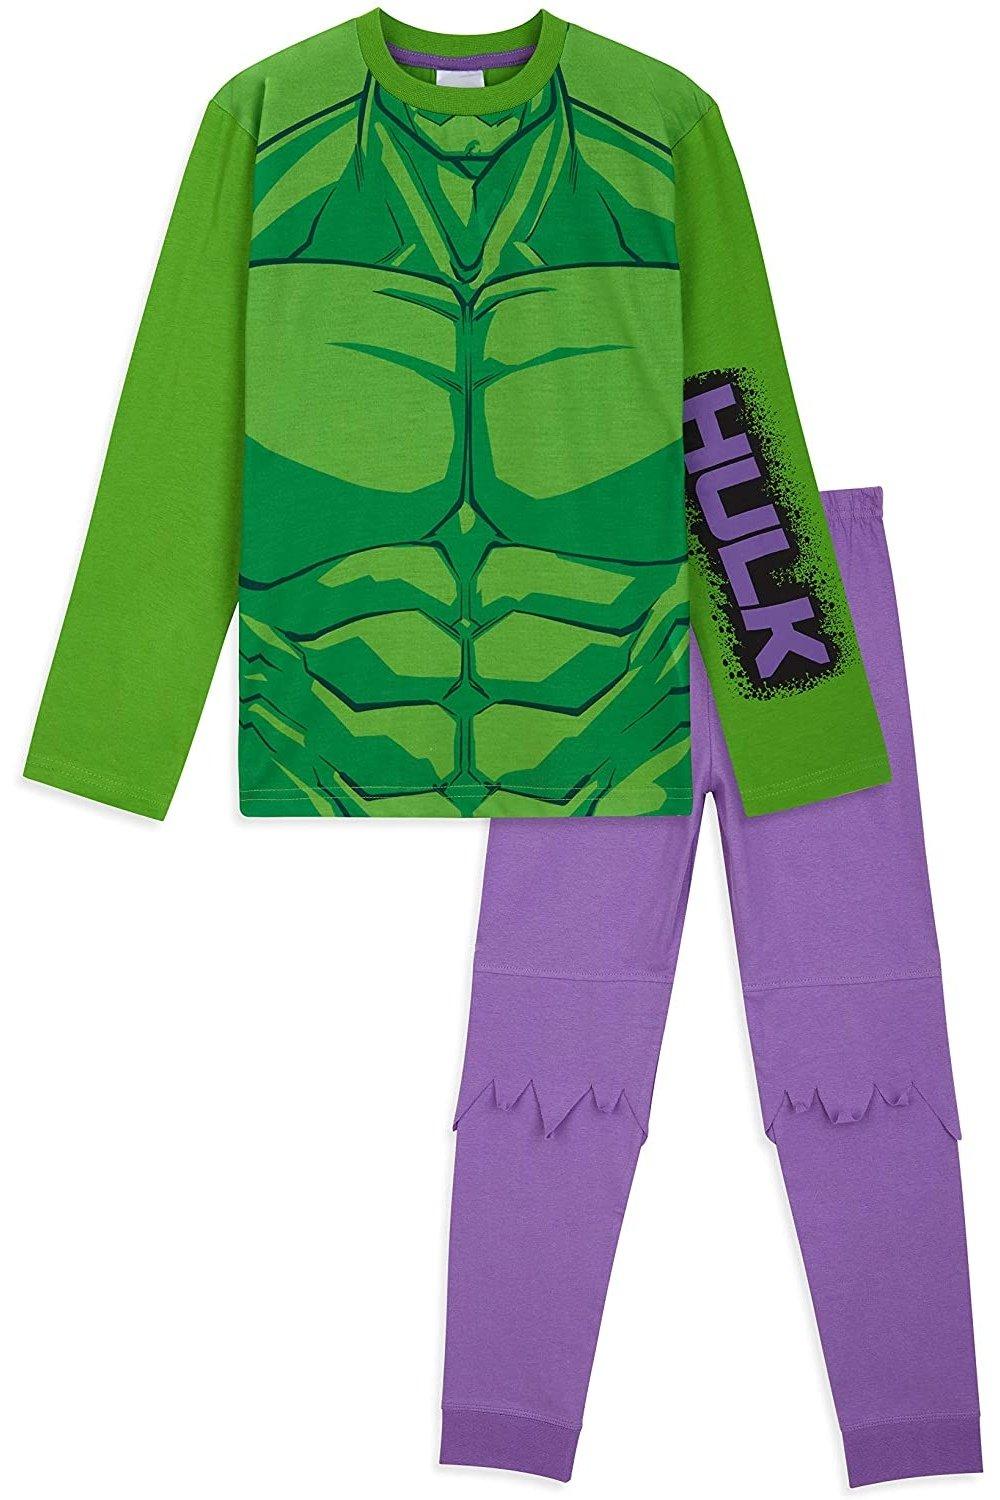 Халк Пижамный комплект Marvel, мультиколор мини экскаватор комплекты детской пижамы пижама для девочек детский пижама для мальчиков одежда для детей одежда для маленьких мальчиков